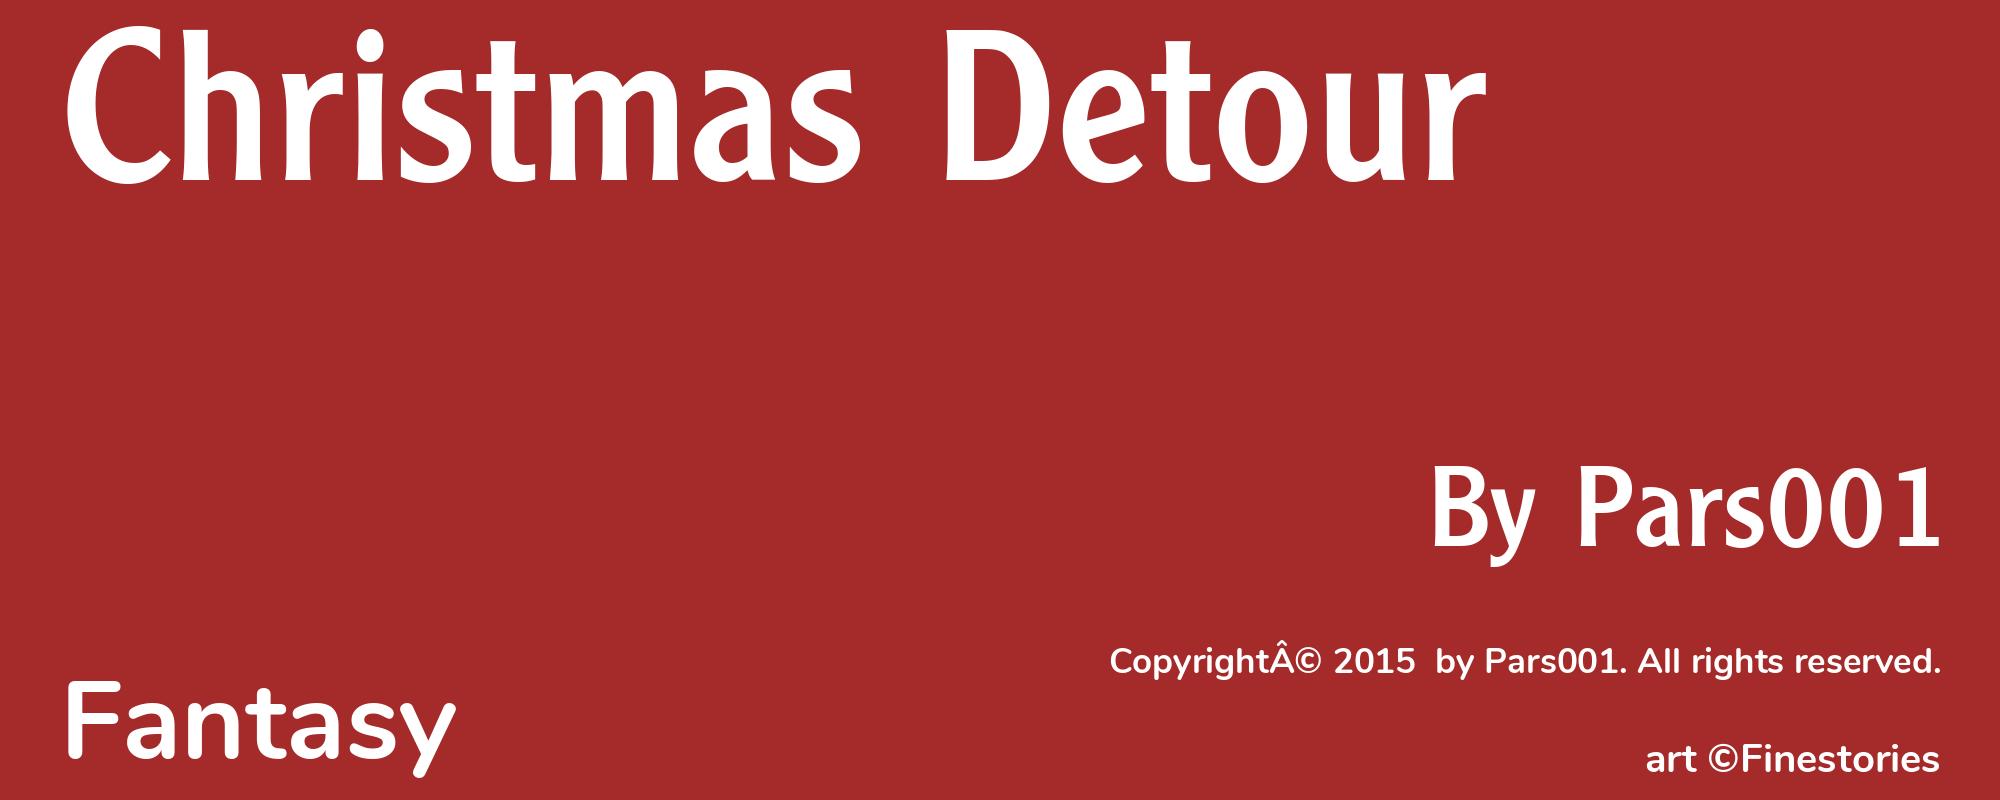 Christmas Detour - Cover